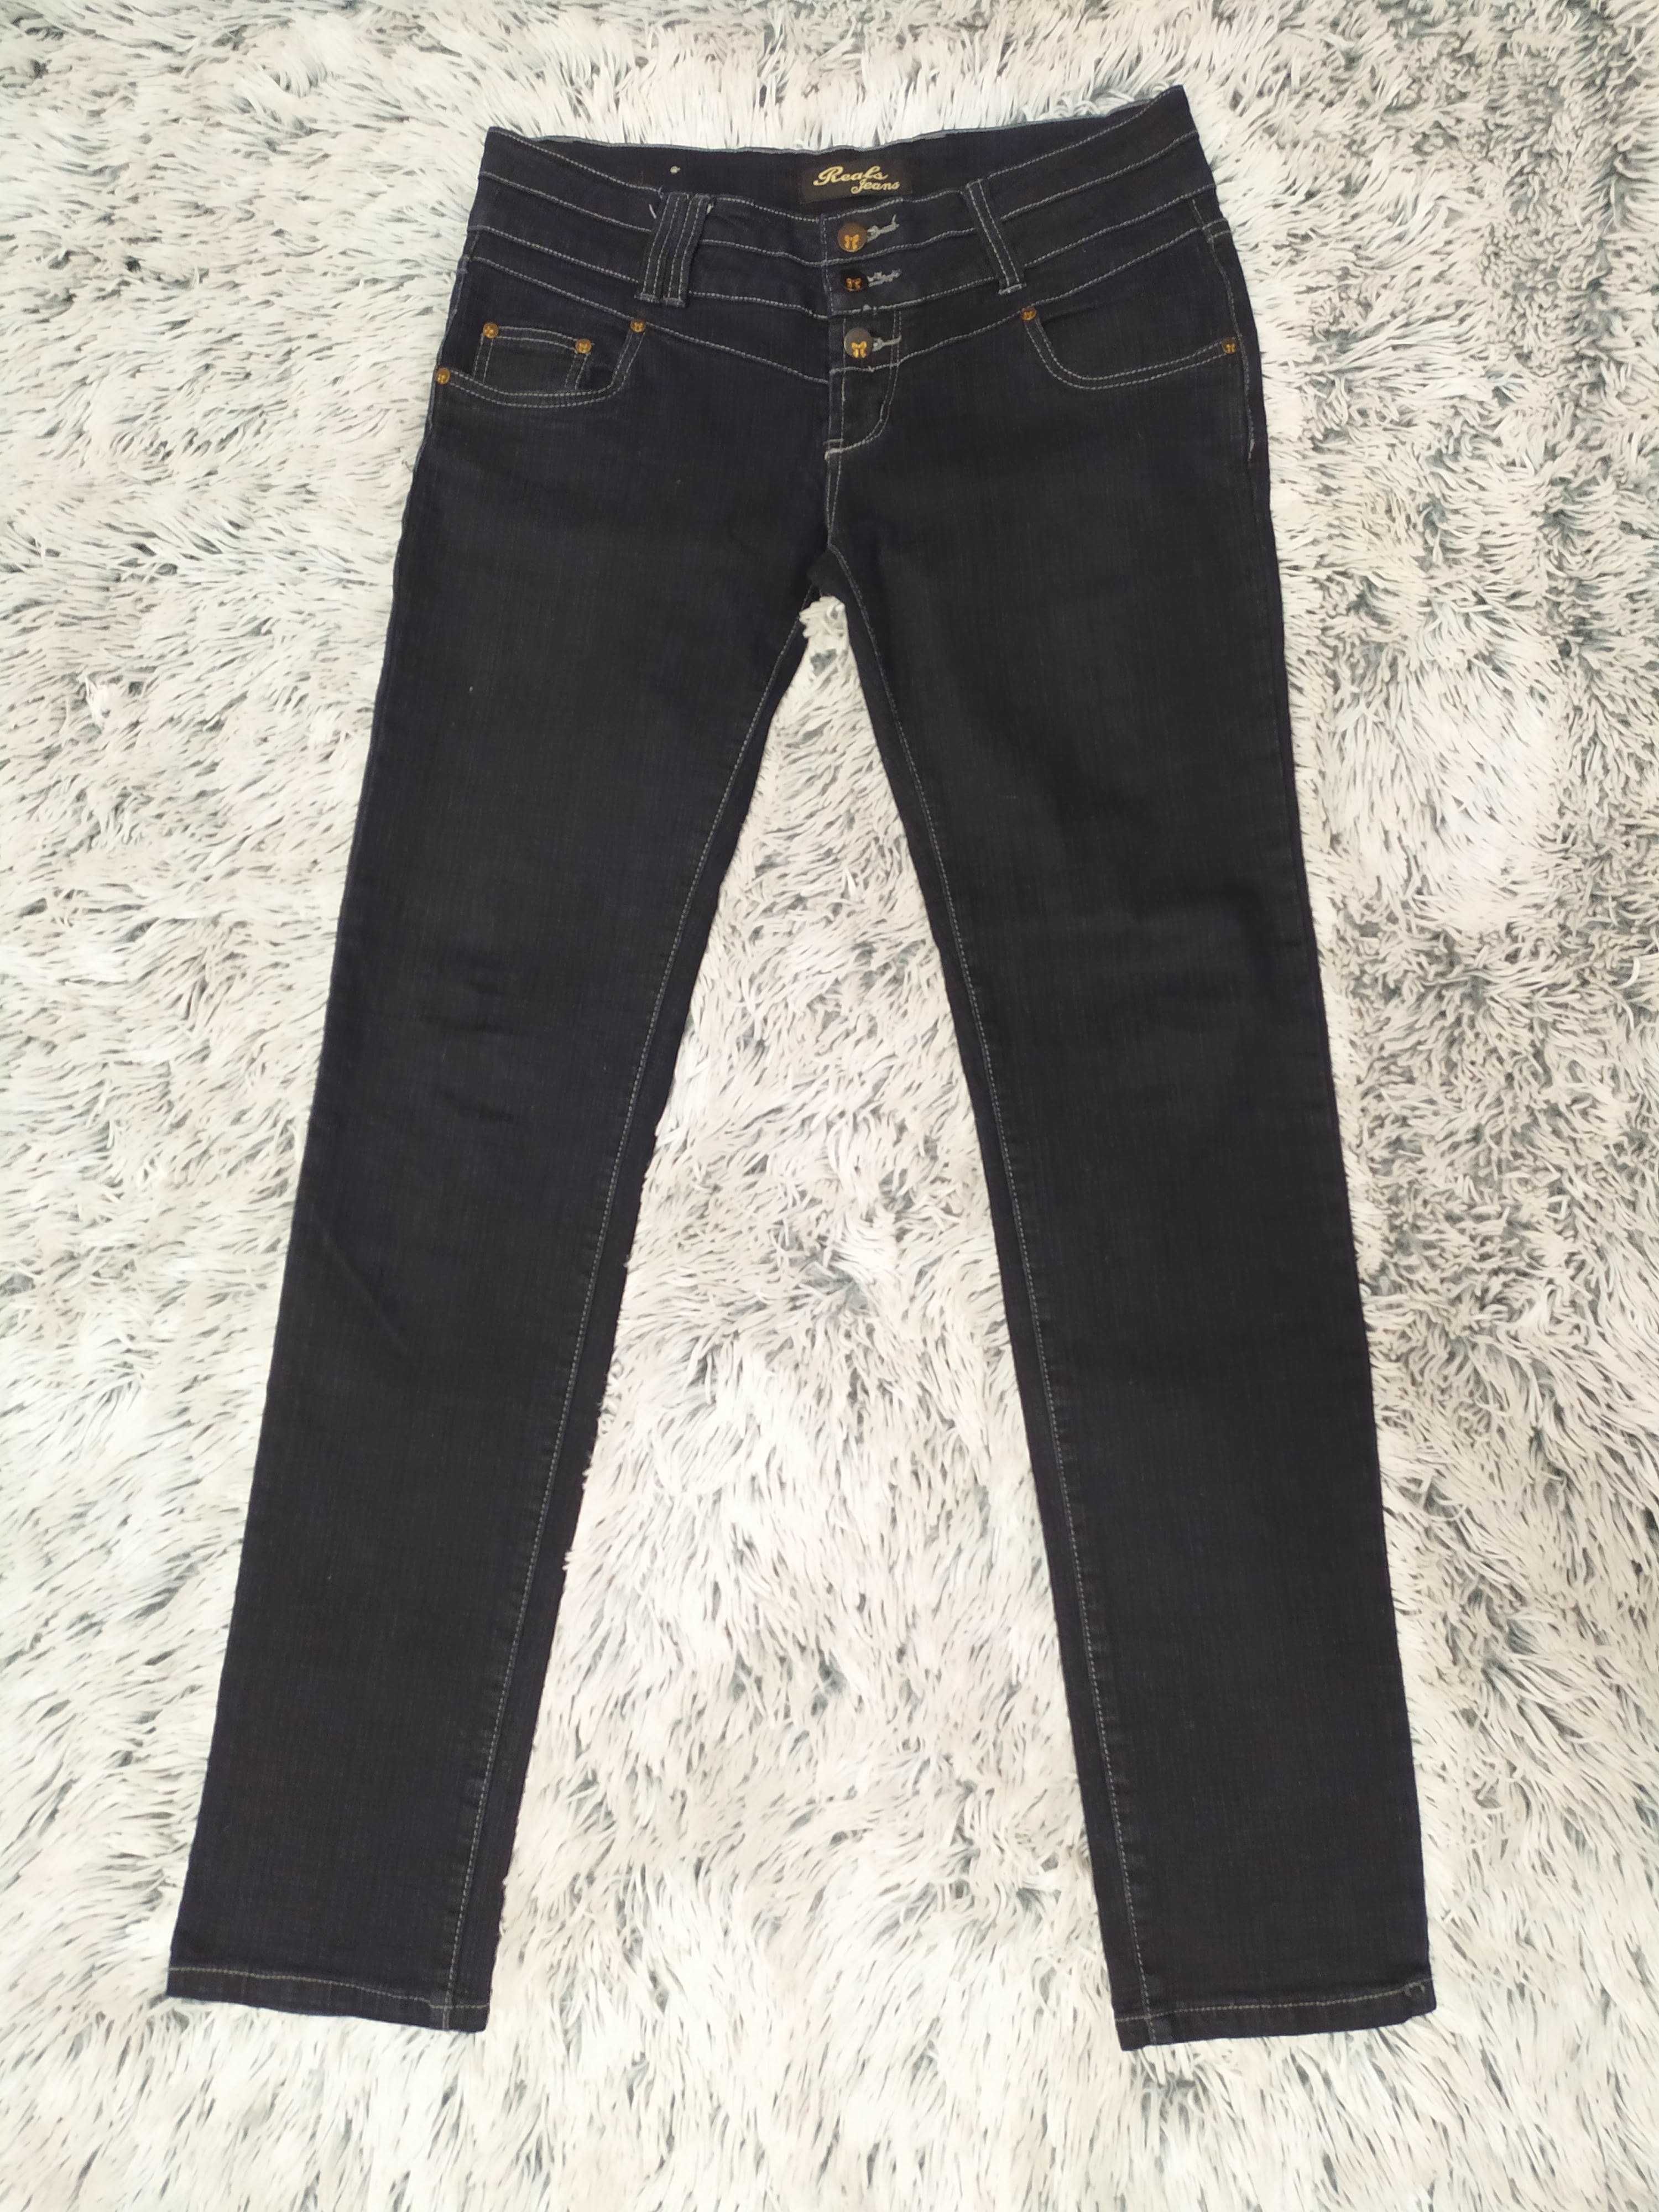 Spodnie jeans granatowe, r. 42, XL